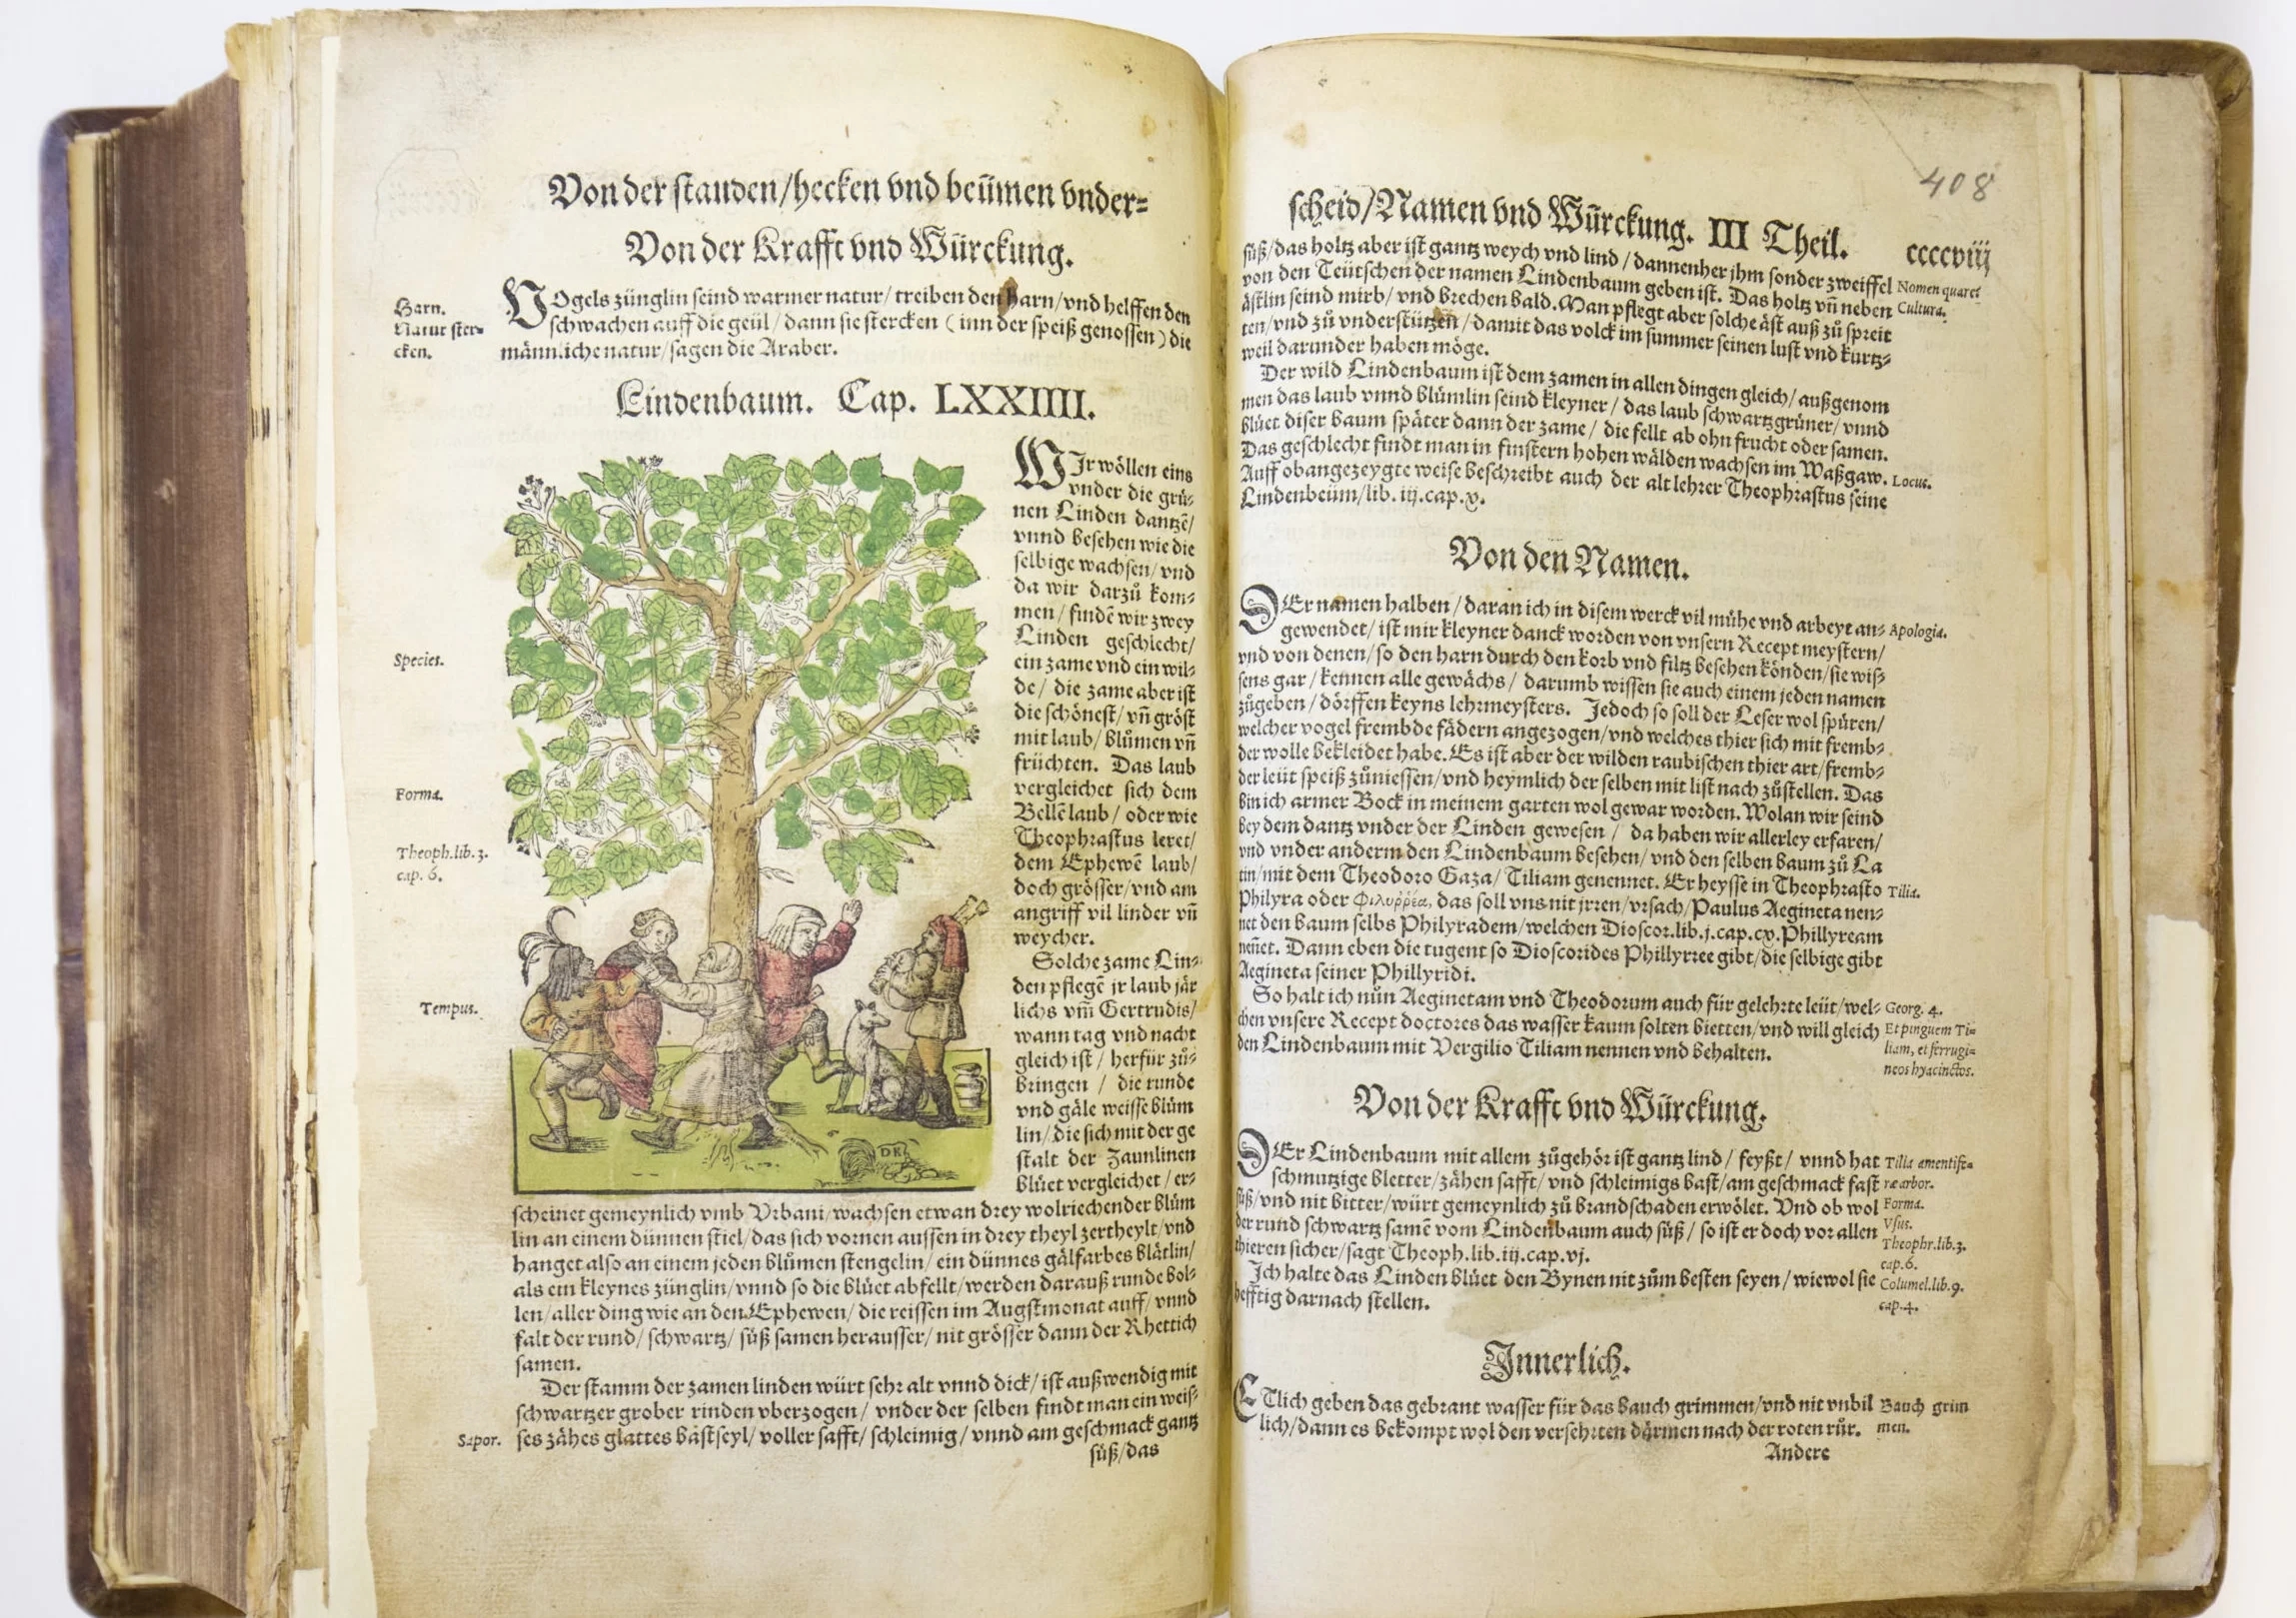 Grāmatas atvērums, kurā ir redzams garšs un ļoti smalks teksts, kurš apraksta ārstniecības augu izmantošanu. Redzama arī smalka, krāsaina grafika ar aprakstā minēto ainu, kur cilvēki dejo ap koku.